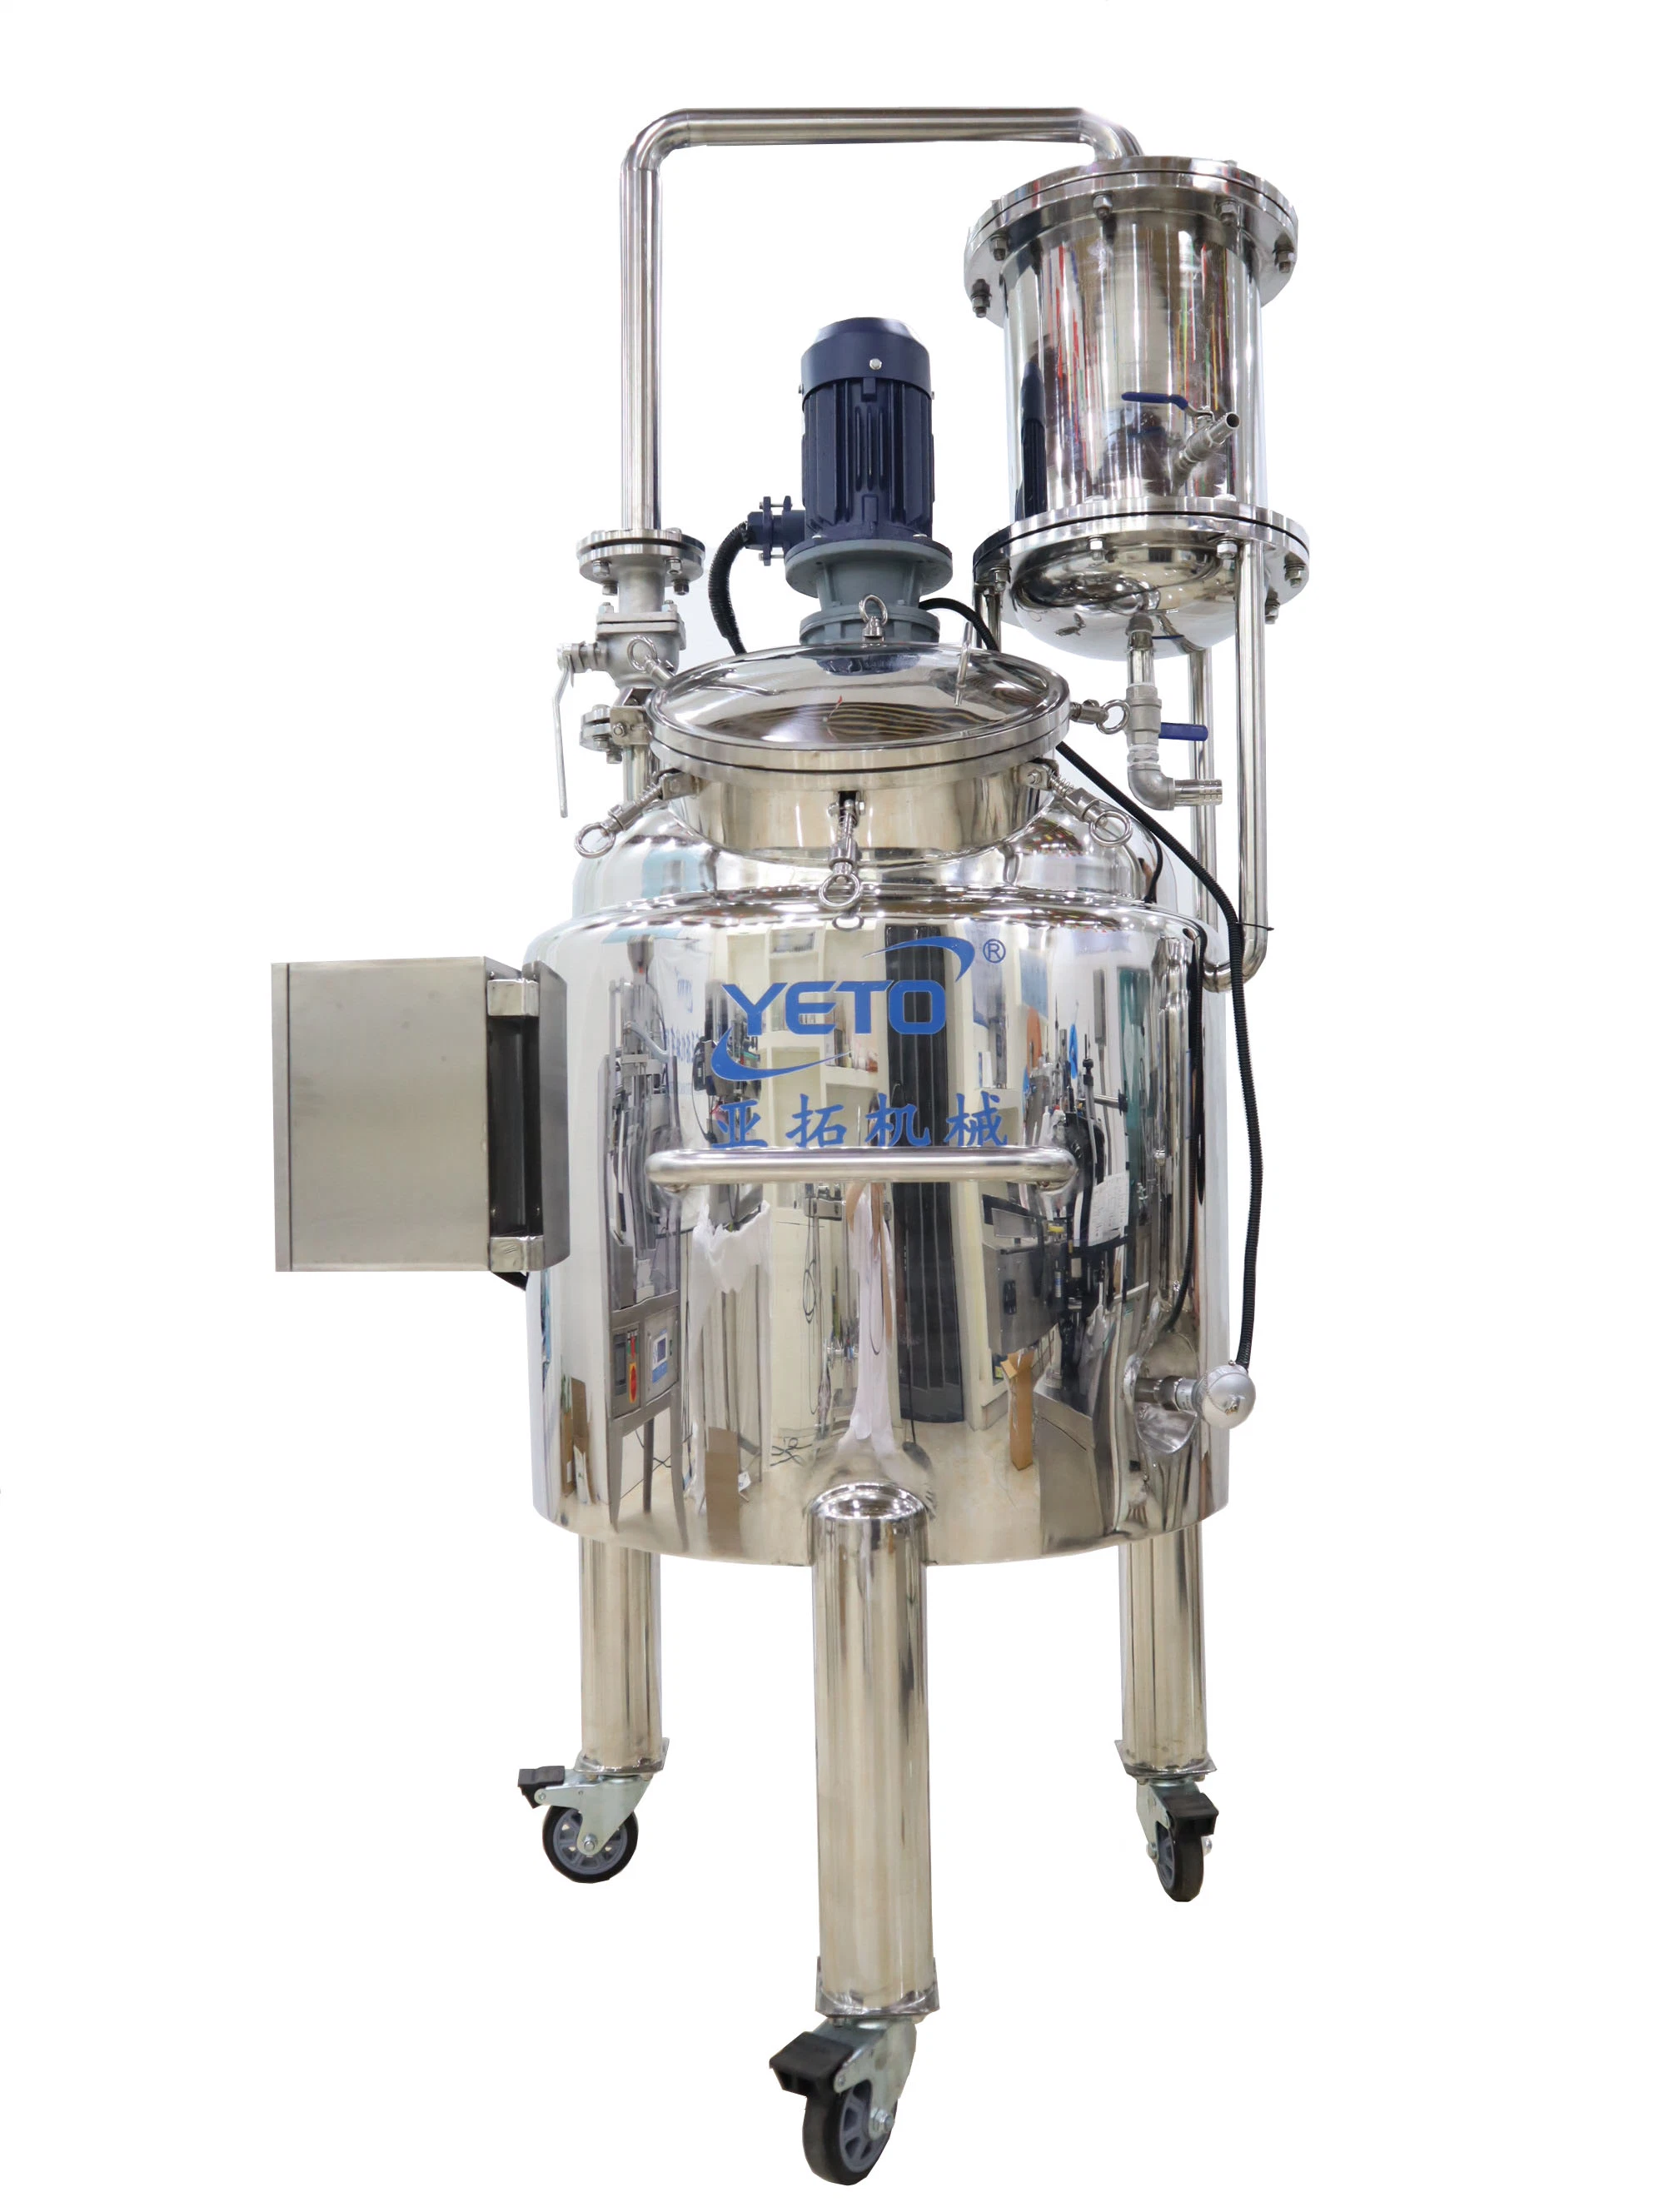 Los productos químicos industriales Cosmetic Mezclador líquido detergente calienta la mezcla con batidora de Reactor depósito mezclador agitador